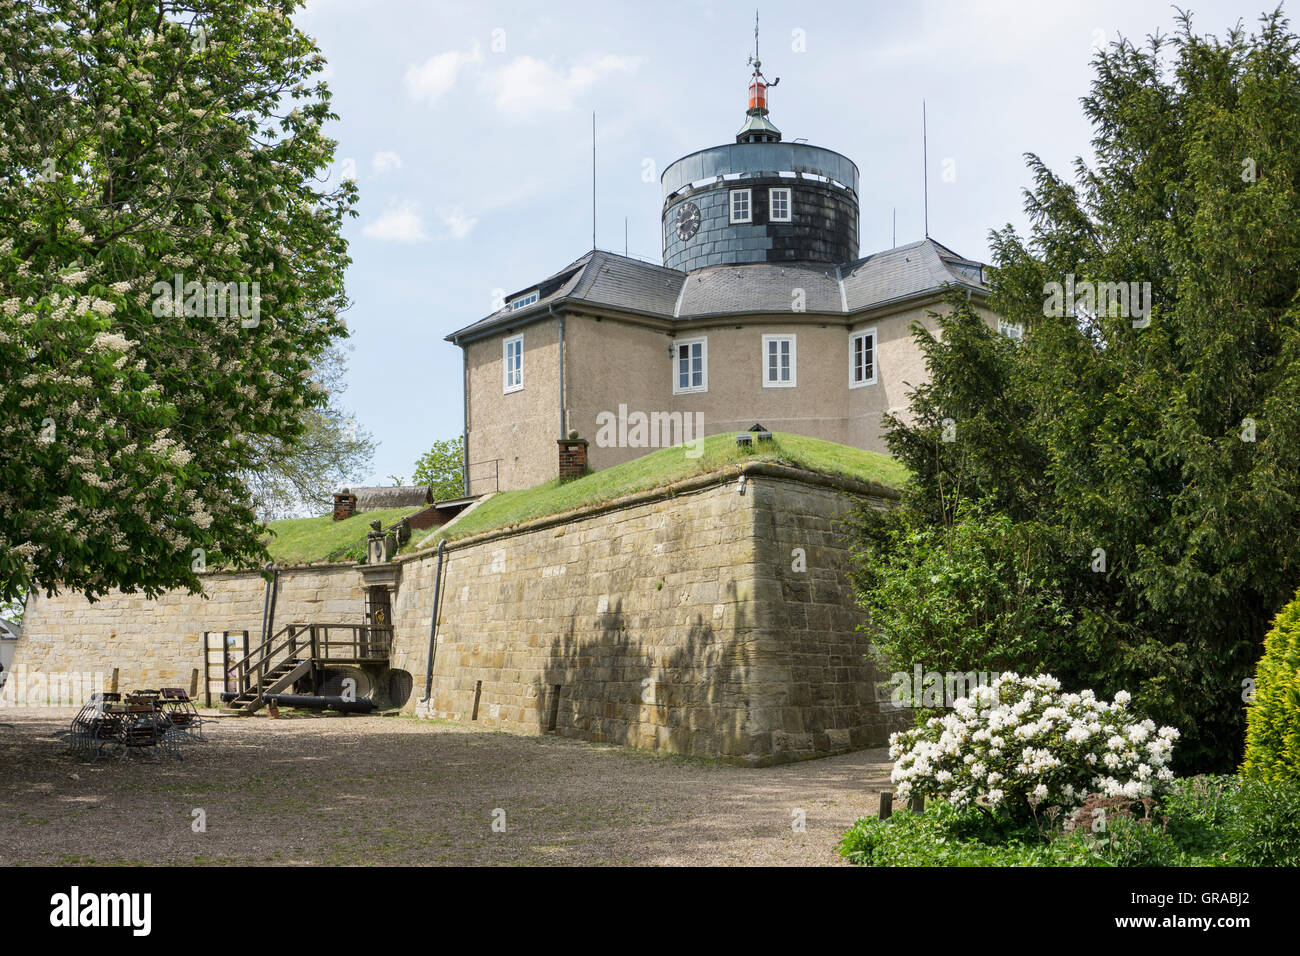 Festung Wilhelmstein, Steinhuder Meer, Wunsdorf, untere Sachsen, Deutschland, Europa Stockfoto